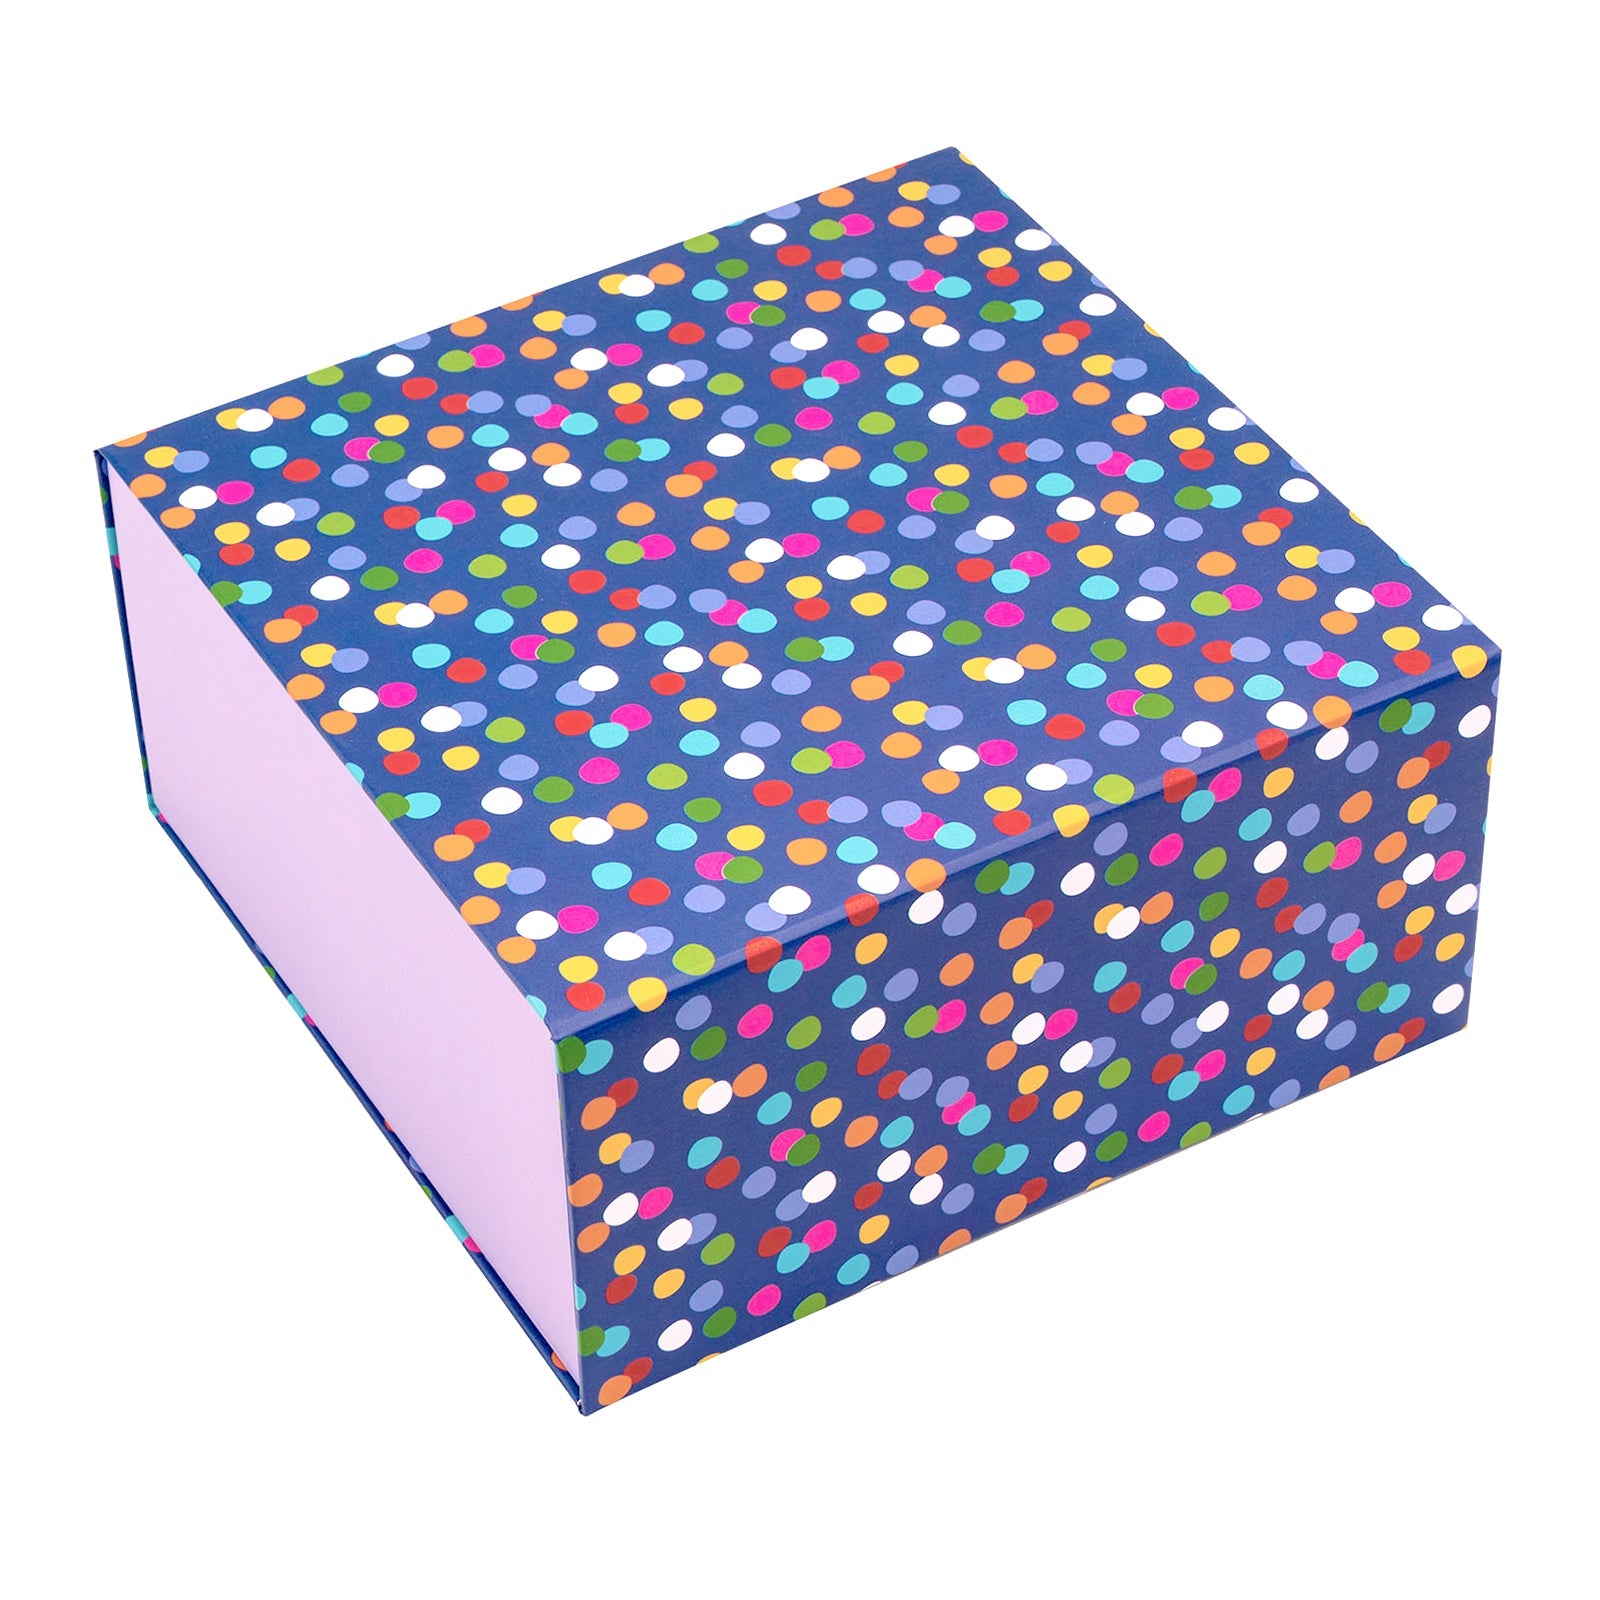 8x8x4 inch Magnetic Closure Box Multicolor Dots